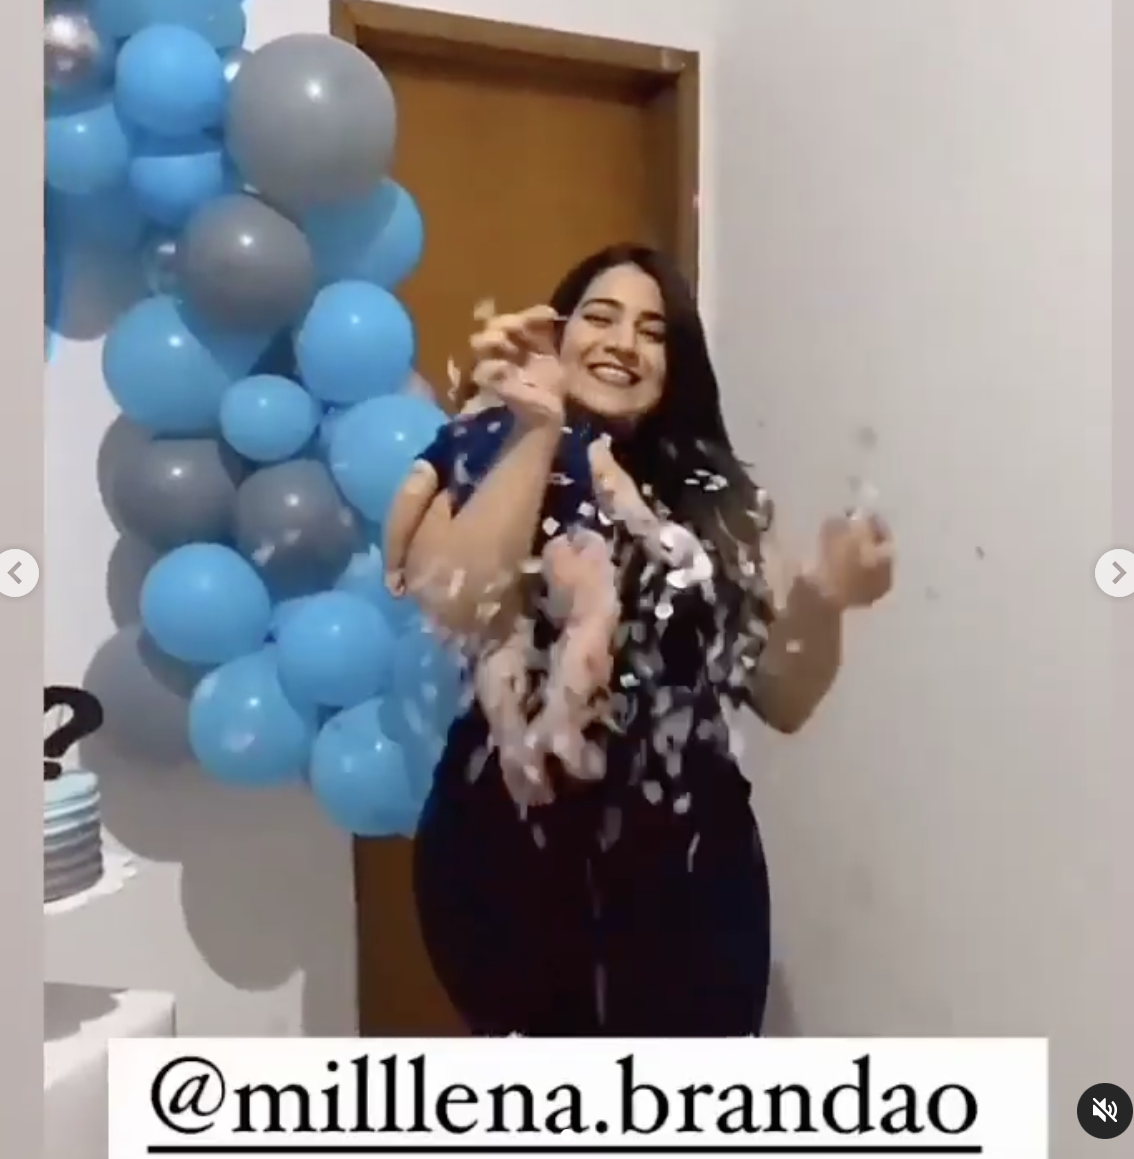 Millena Brandao revienta el globo y sale confeti plateado. | Foto: instagram.com/milllena.brandao